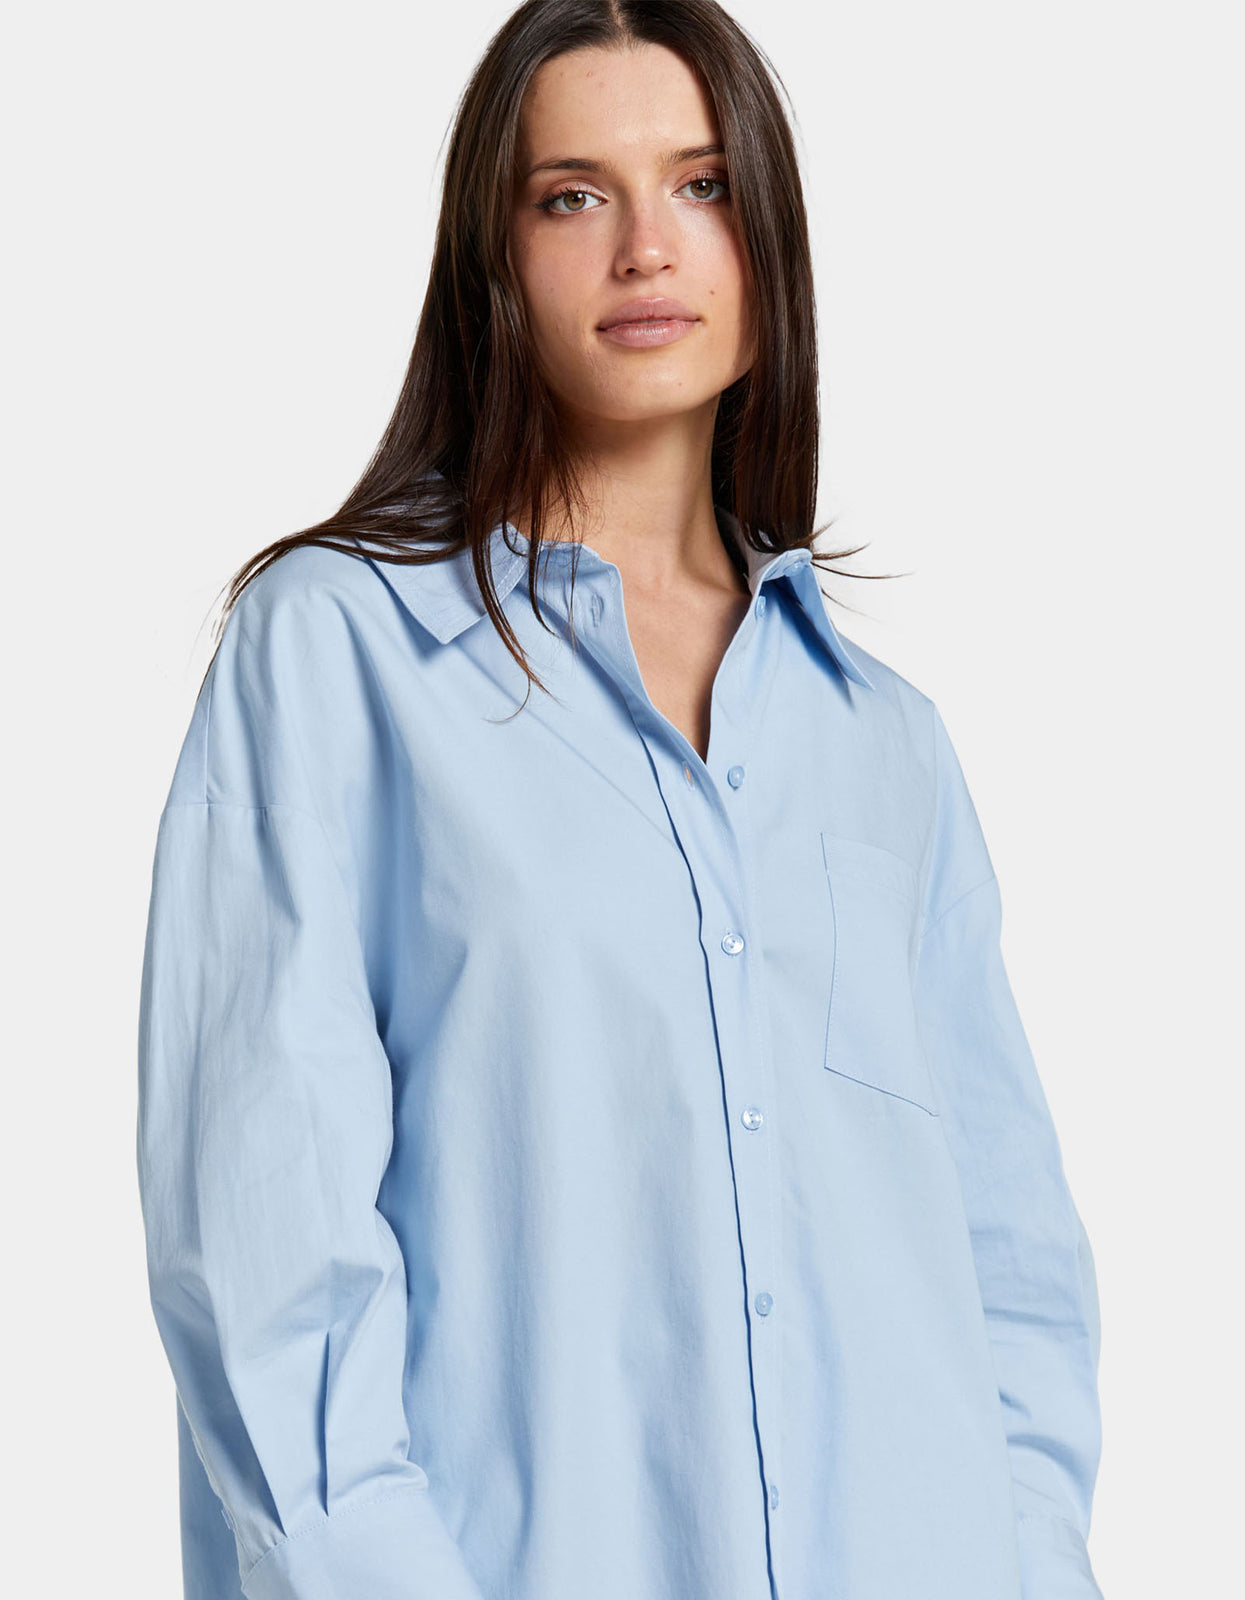 Superette  Mika Shirt - Blue And White Stripe